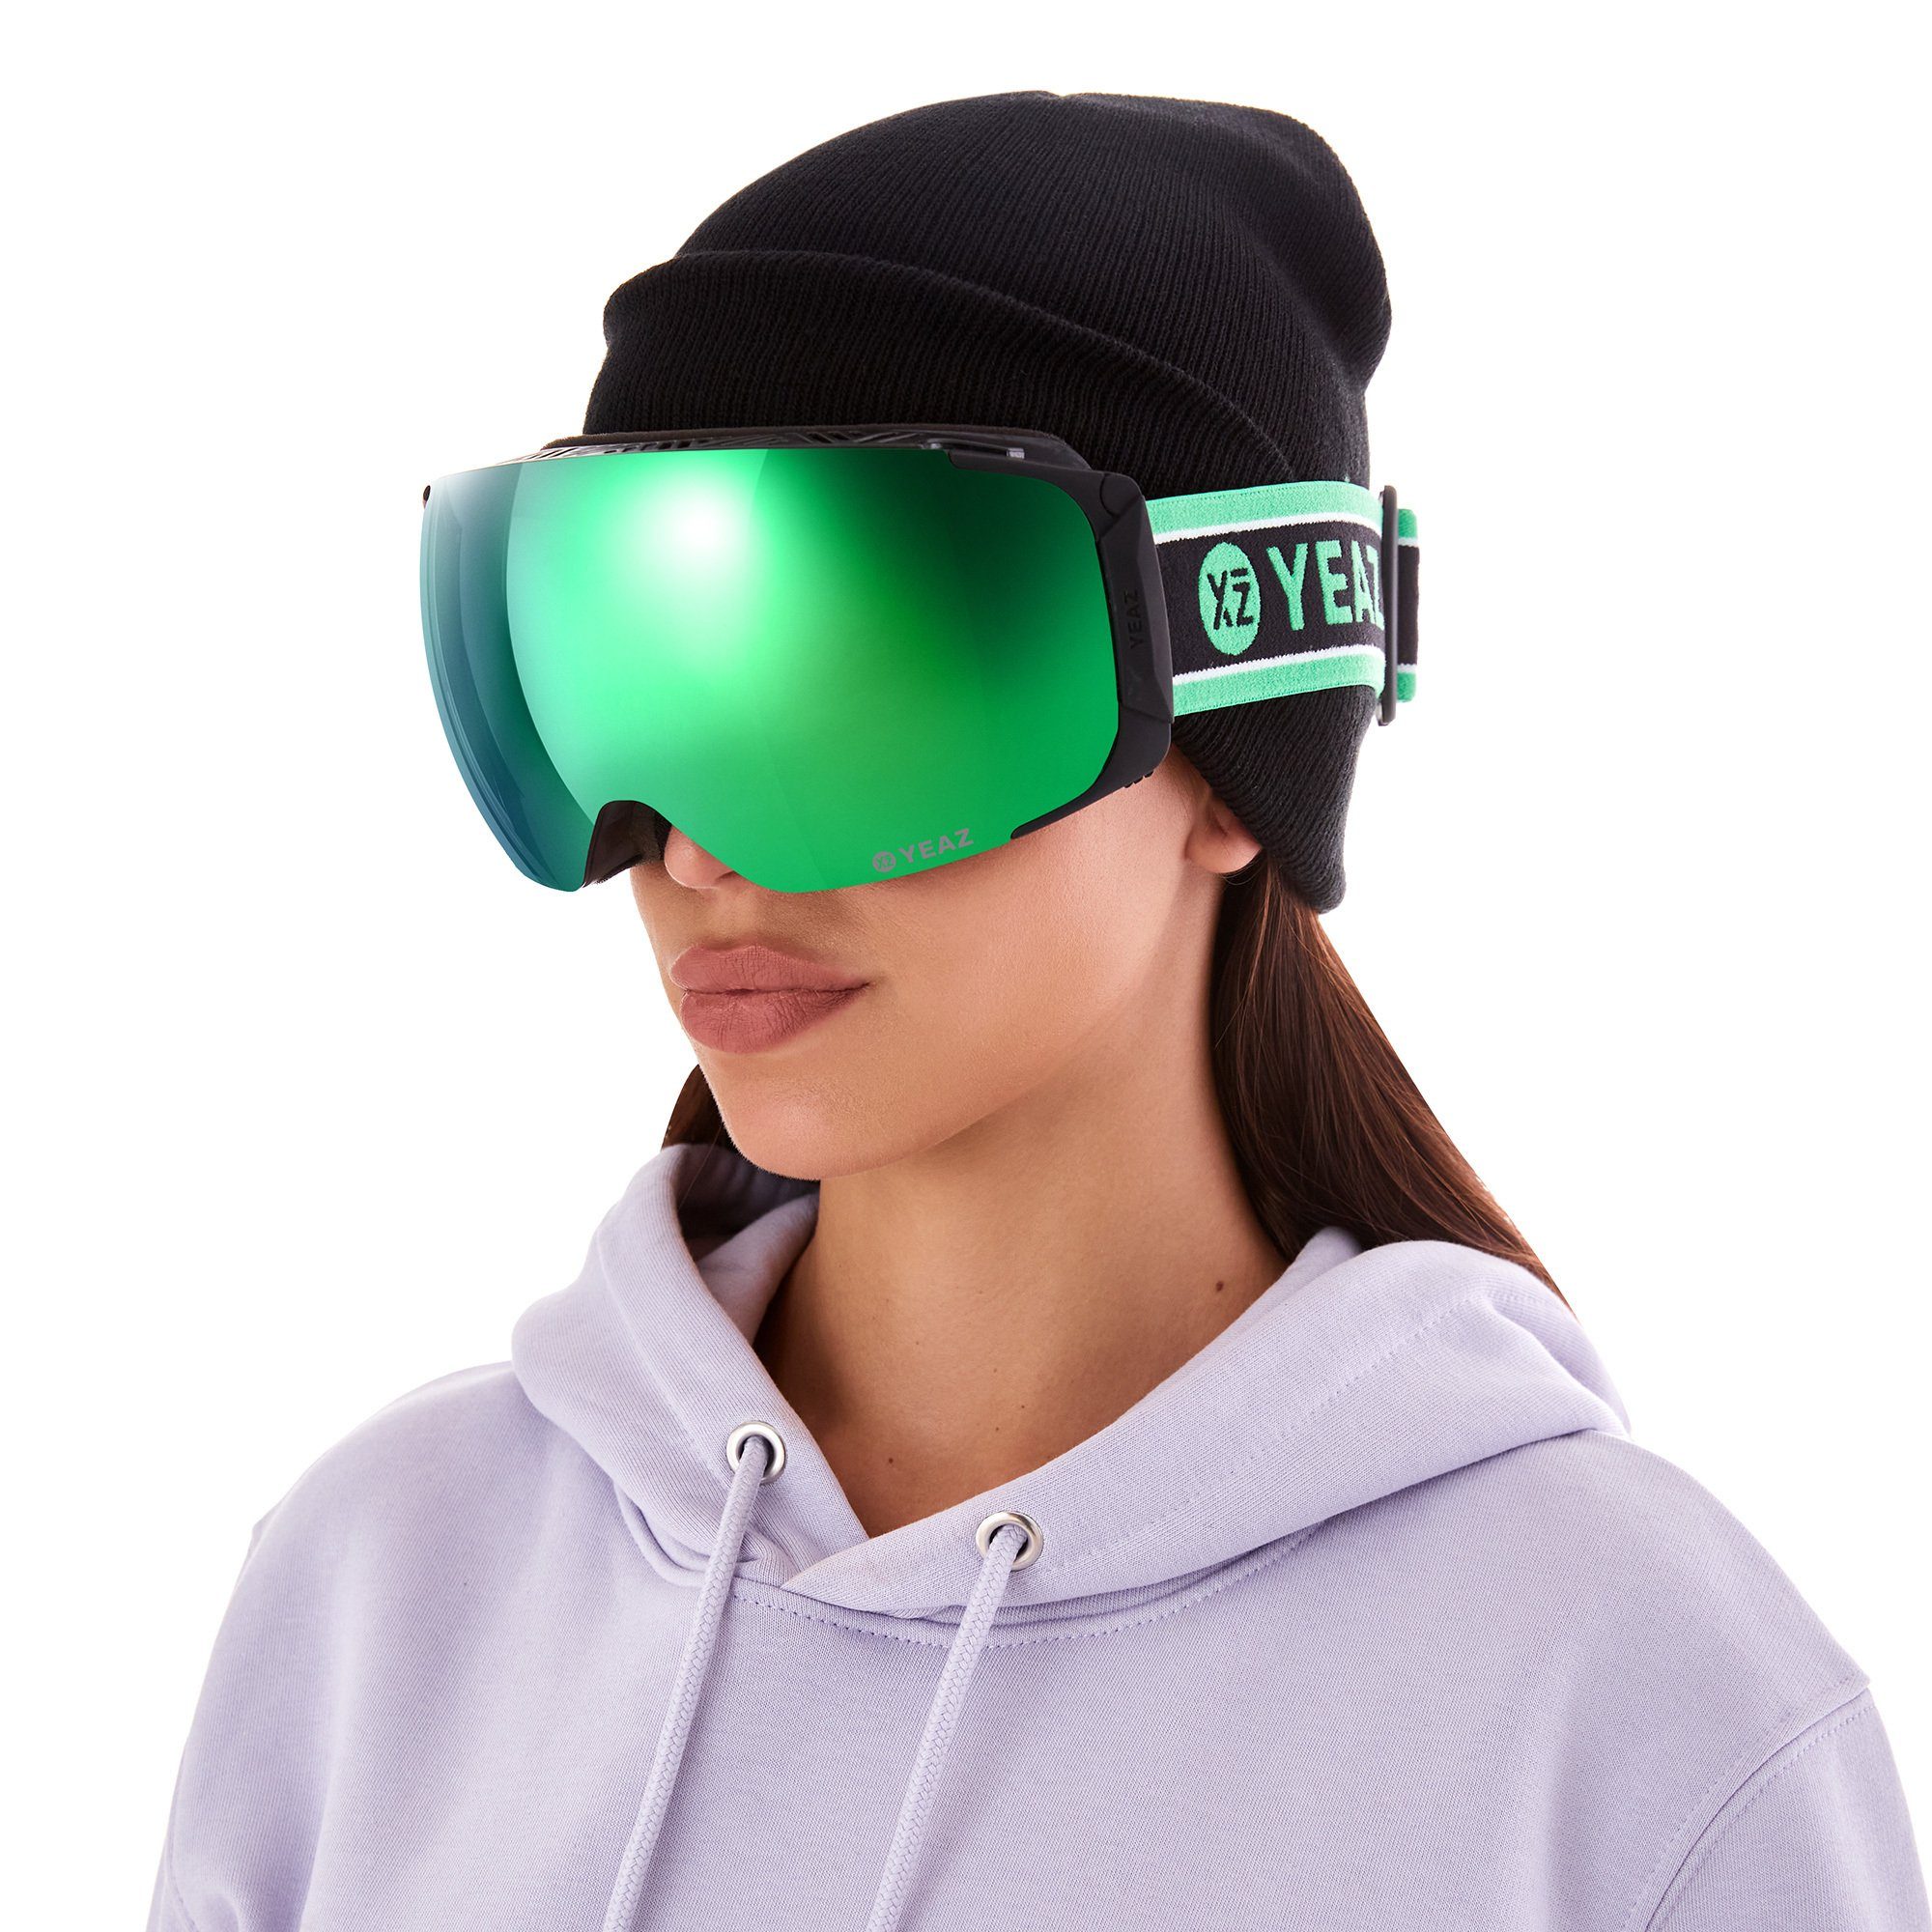 und Jugendliche und ski- und Erwachsene Premium-Ski- TWEAK-X Skibrille für snowboard-brille, Snowboardbrille YEAZ